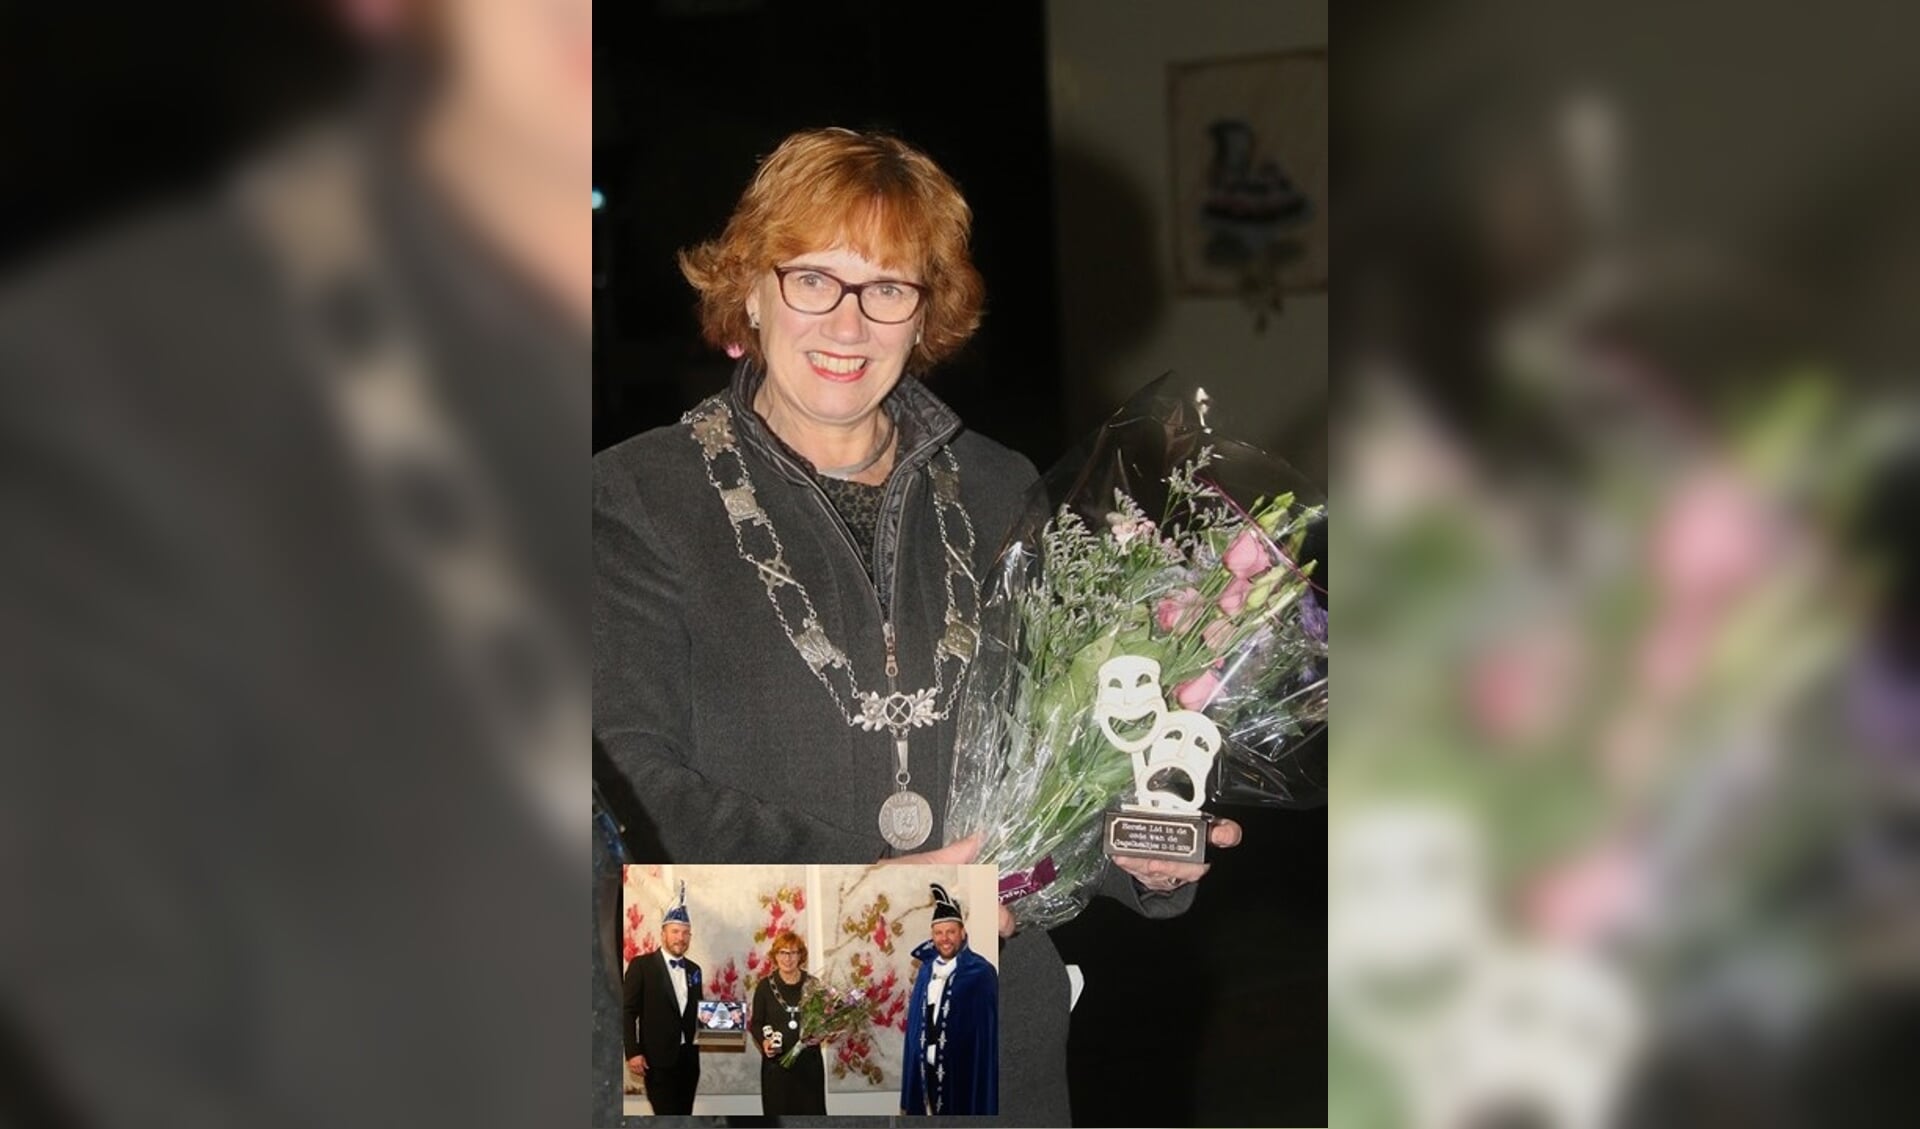 Burgemeester Anneke Raven met het beeldje en de bos bloemen die ze in ontvangst mocht nemen. En op haar kamer met de website online.